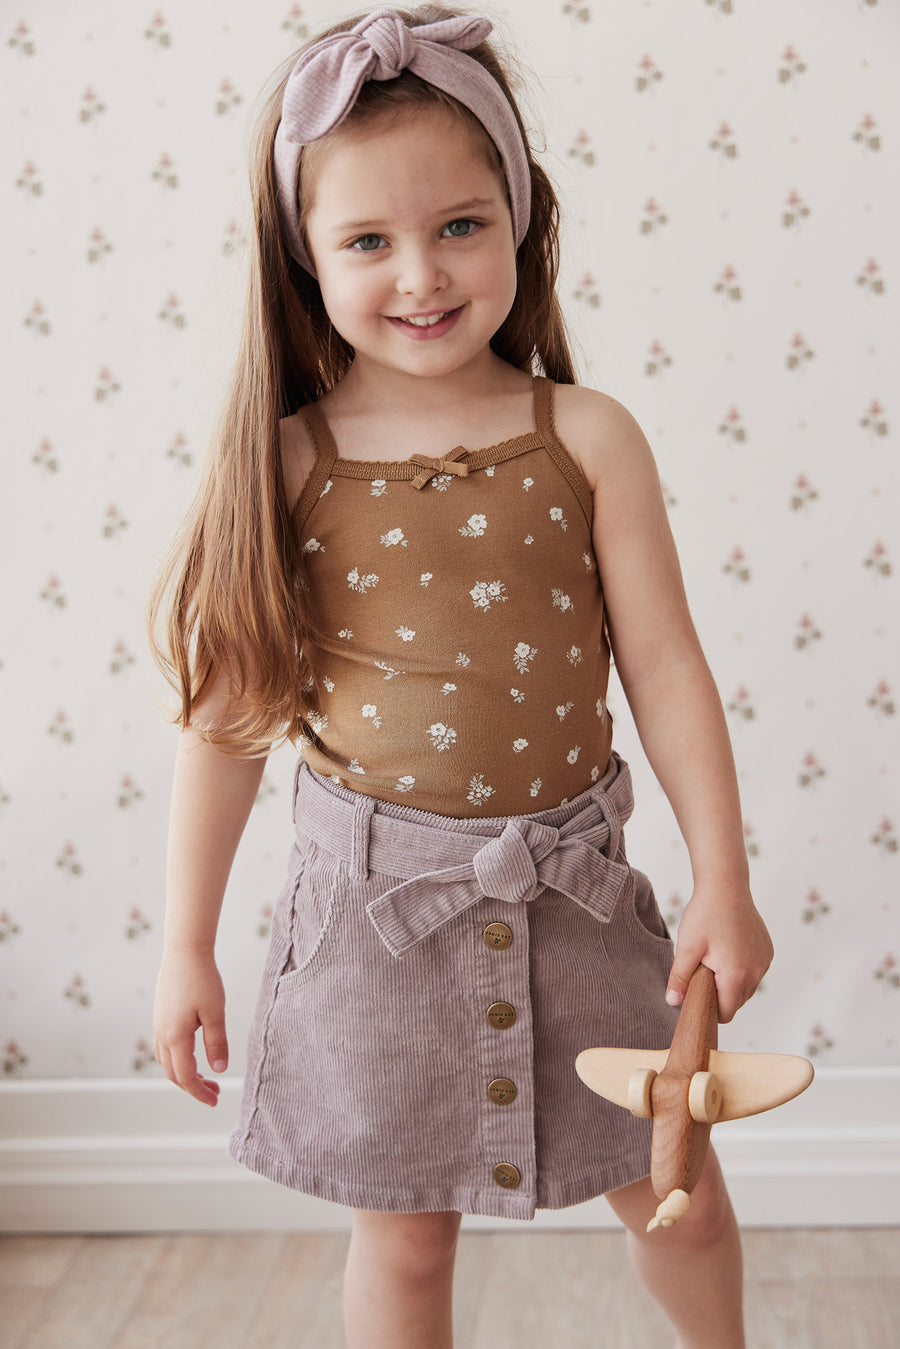 Miranda Cord Skirt - Mushroom Childrens Skirt from Jamie Kay NZ